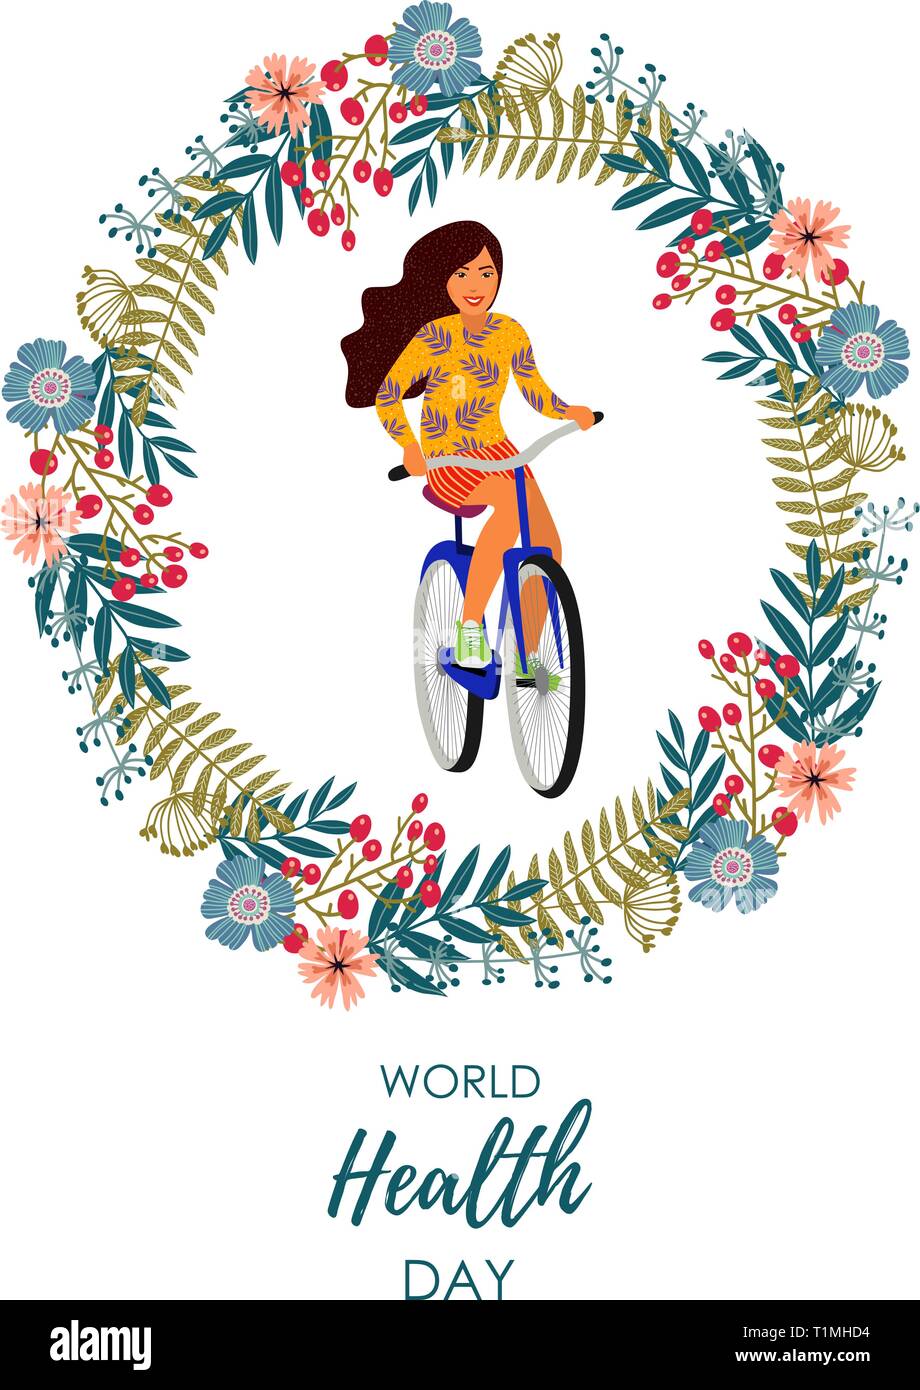 Uno stile di vita sano. Illustrazione Vettoriale con ragazza su una bicicletta all'interno di una corona di fiori su uno sfondo bianco. Illustrazione Vettoriale